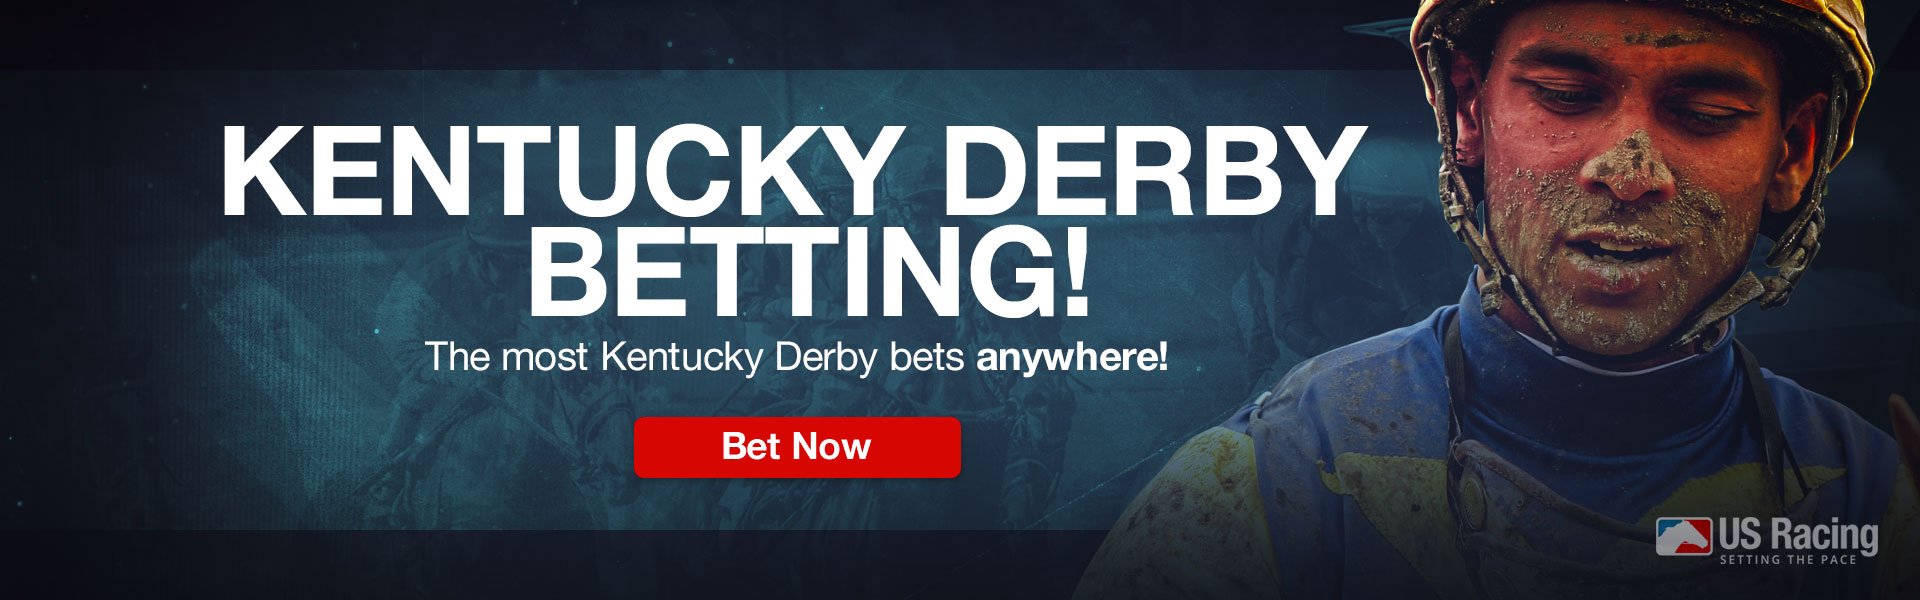 Kentucky derby bets odds